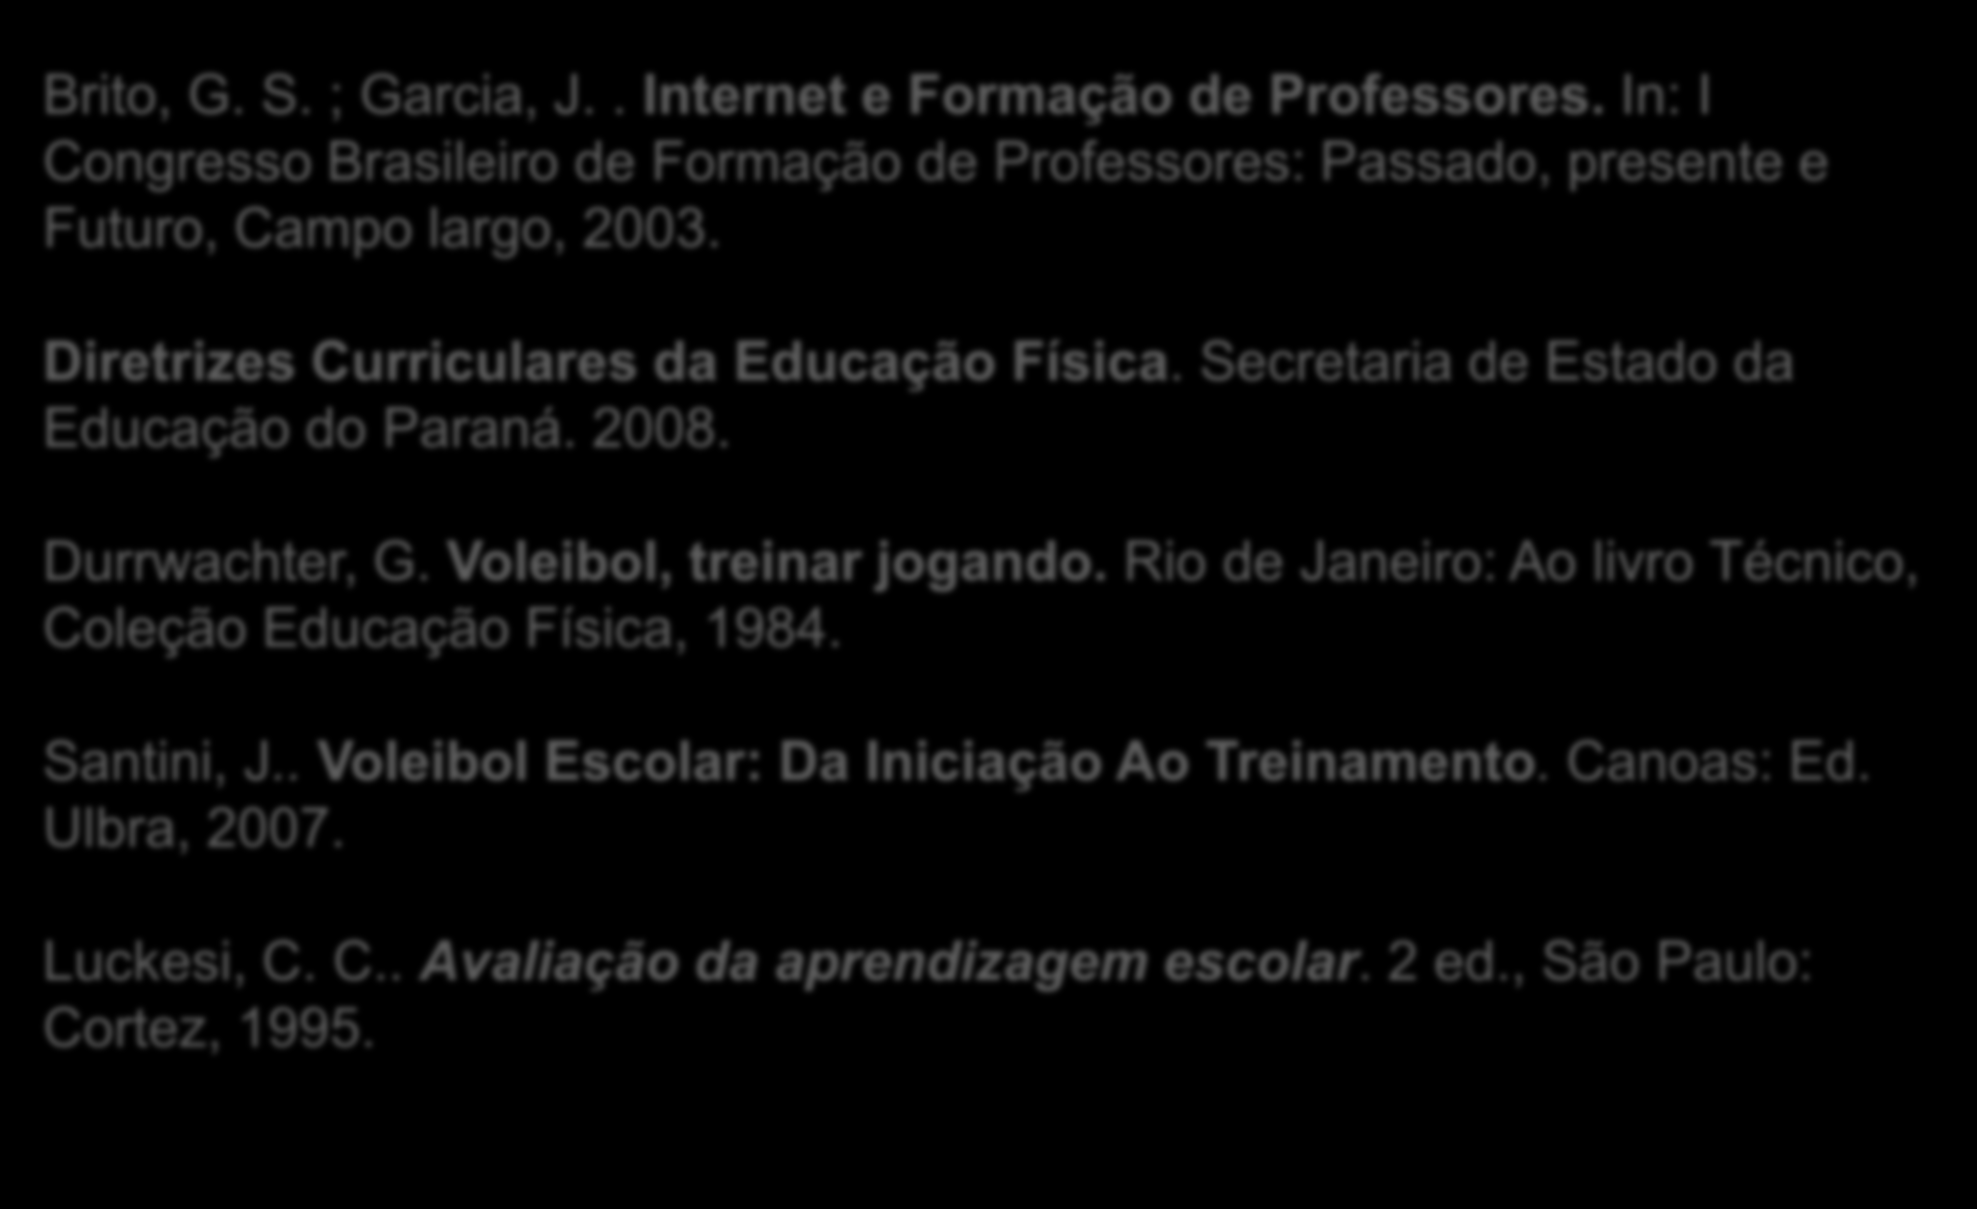 Referências Brito, G. S. ; Garcia, J.. Internet e Formação de Professores. In: I Congresso Brasileiro de Formação de Professores: Passado, presente e Futuro, Campo largo, 2003.